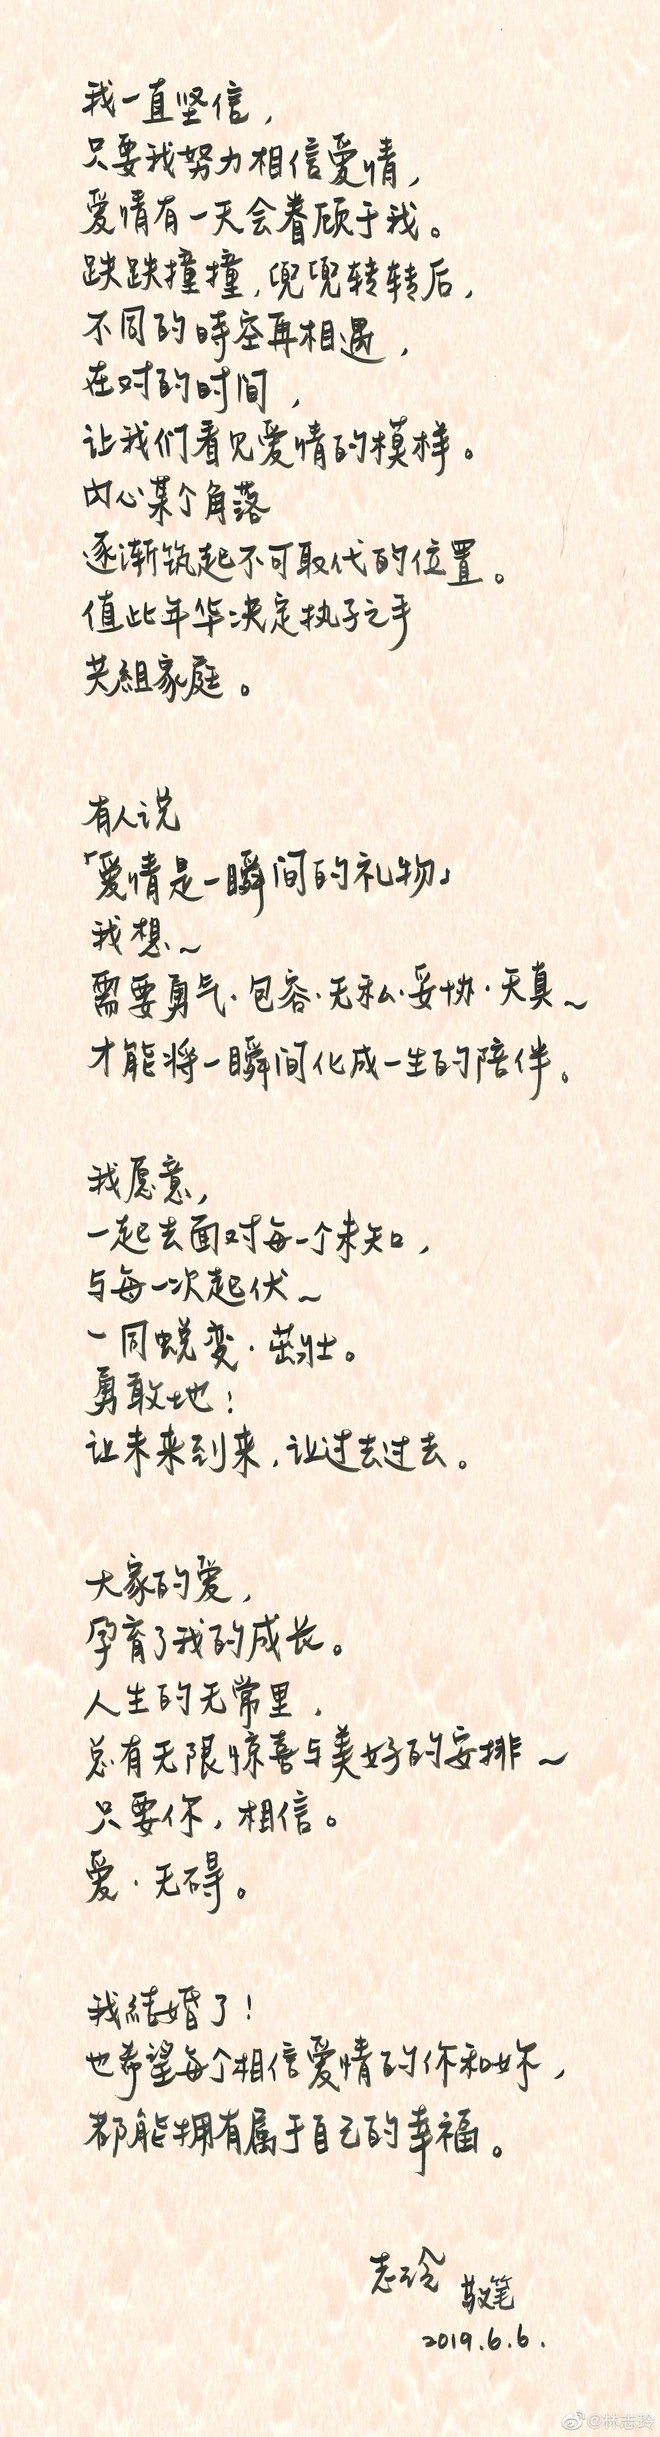 Siêu mẫu nóng bỏng Lâm Chí Linh bất ngờ tuyên bố kết hôn, nhưng chú rể không phải Ngôn Thừa Húc - Ảnh 2.